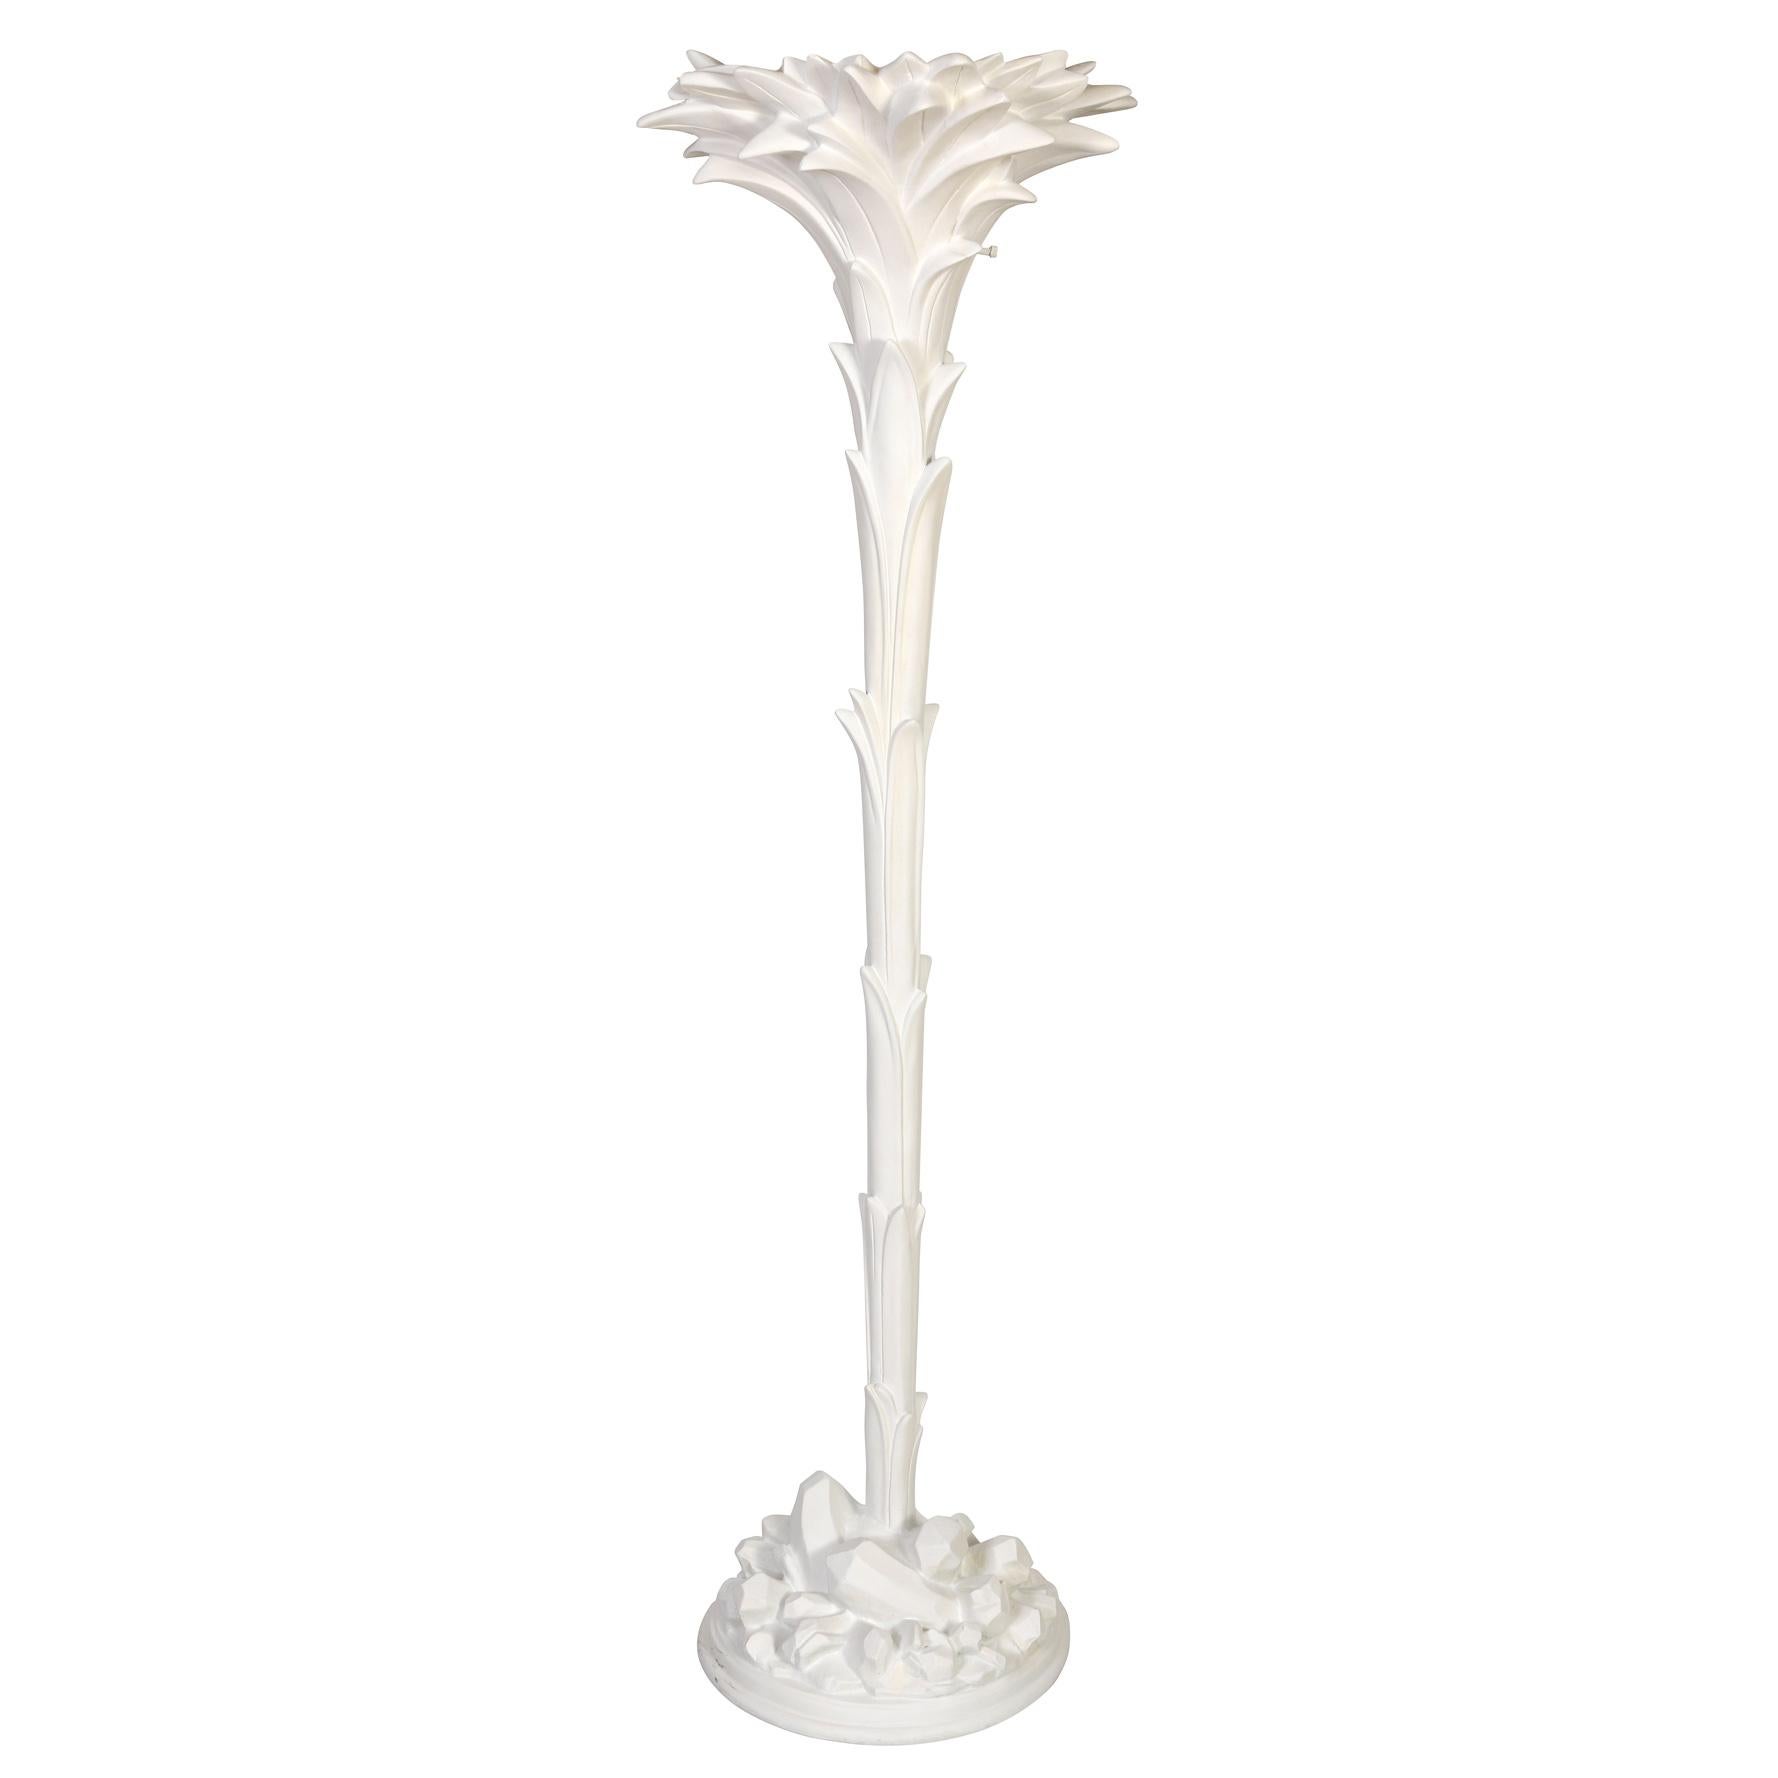 Ein glamouröses Paar weißer Palmblatt-Torchièren im Stil von Serge Roche, die mühelos elegante Opulenz mit tropischem Charme verbinden. Diese exquisiten Stehlampen vereinen Raffinesse mit einem Hauch von natürlicher Pracht und versprechen, in jeder